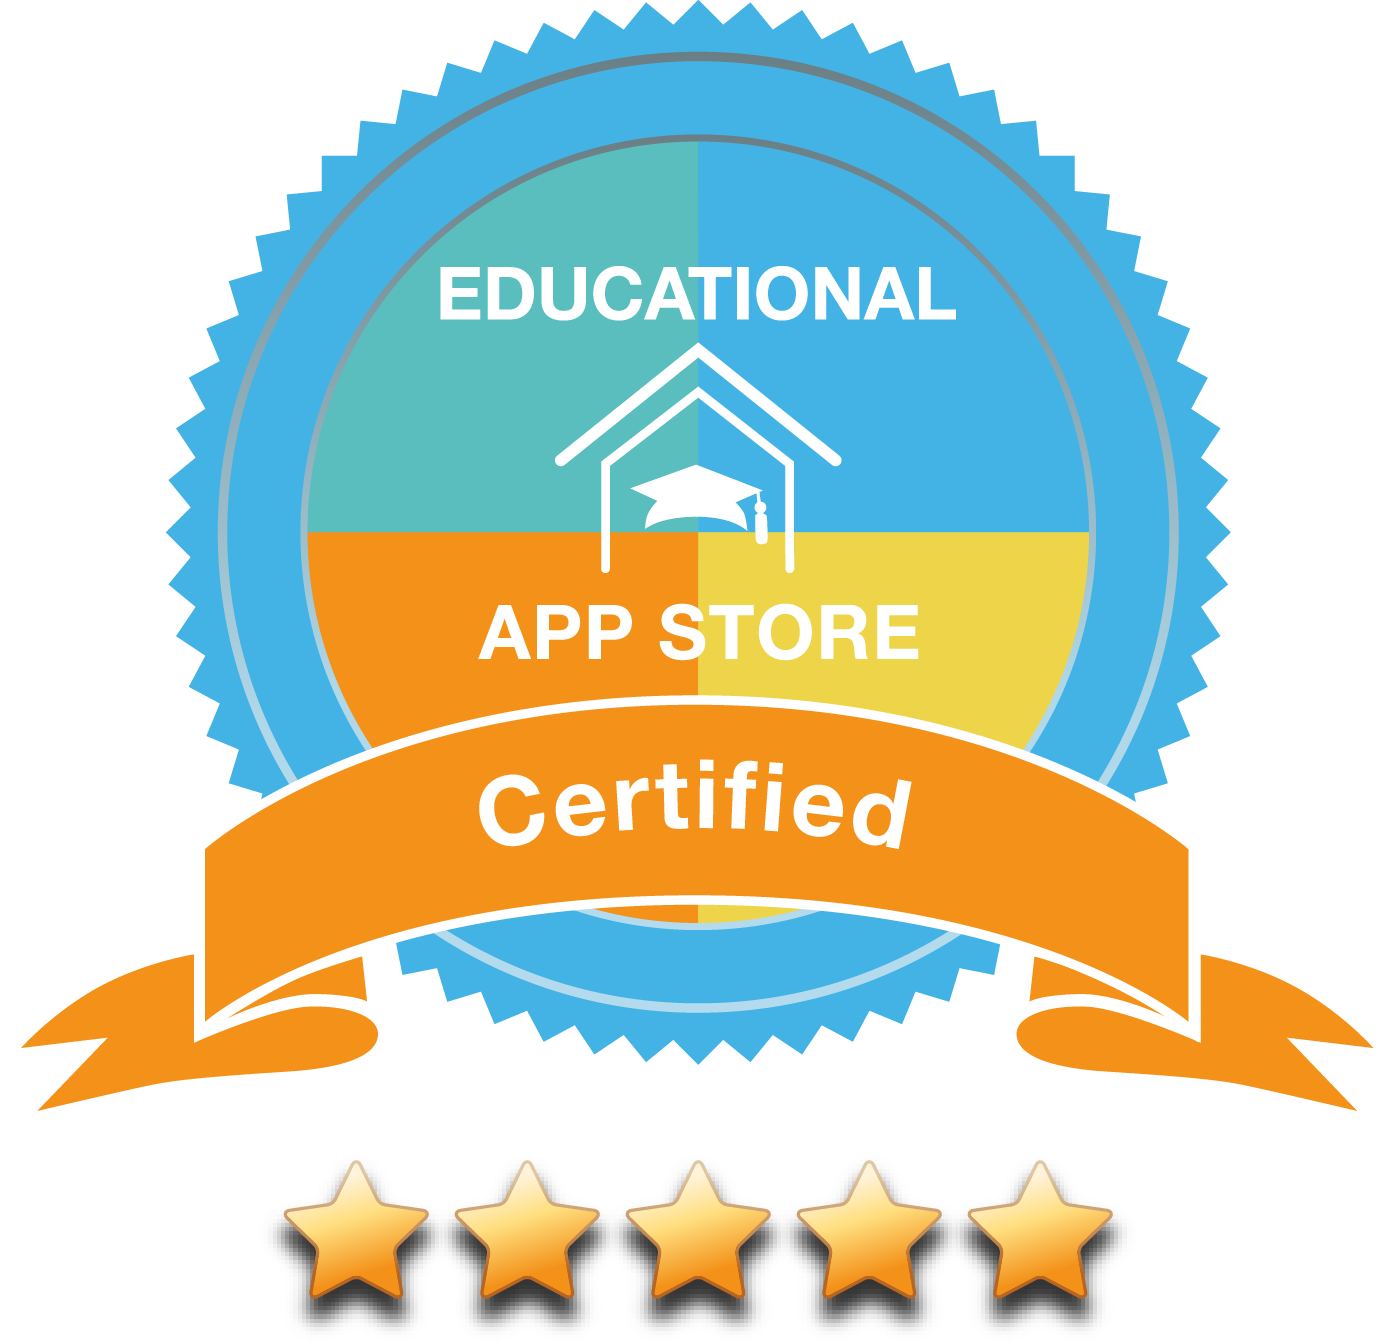 Educational App Store - 5 Star Rating App